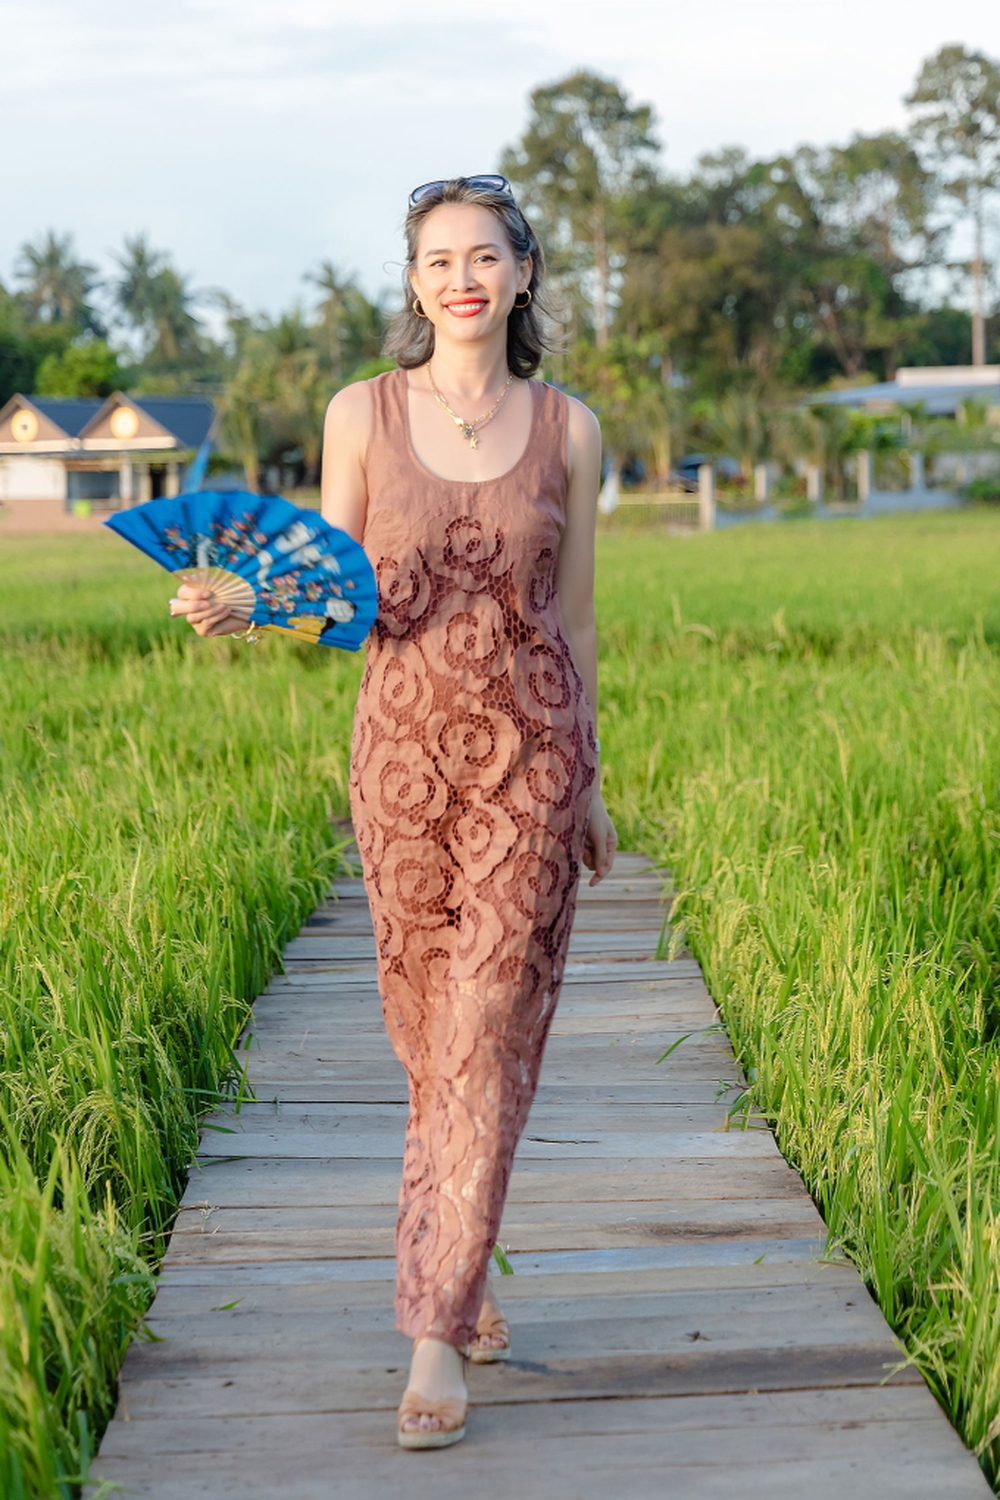 Hoa hậu Việt độc lạ bậc nhất: U50 đầu đầy tóc bạc vẫn đẹp quyến rũ, bỏ showbiz làm nông dân tại Mỹ-6